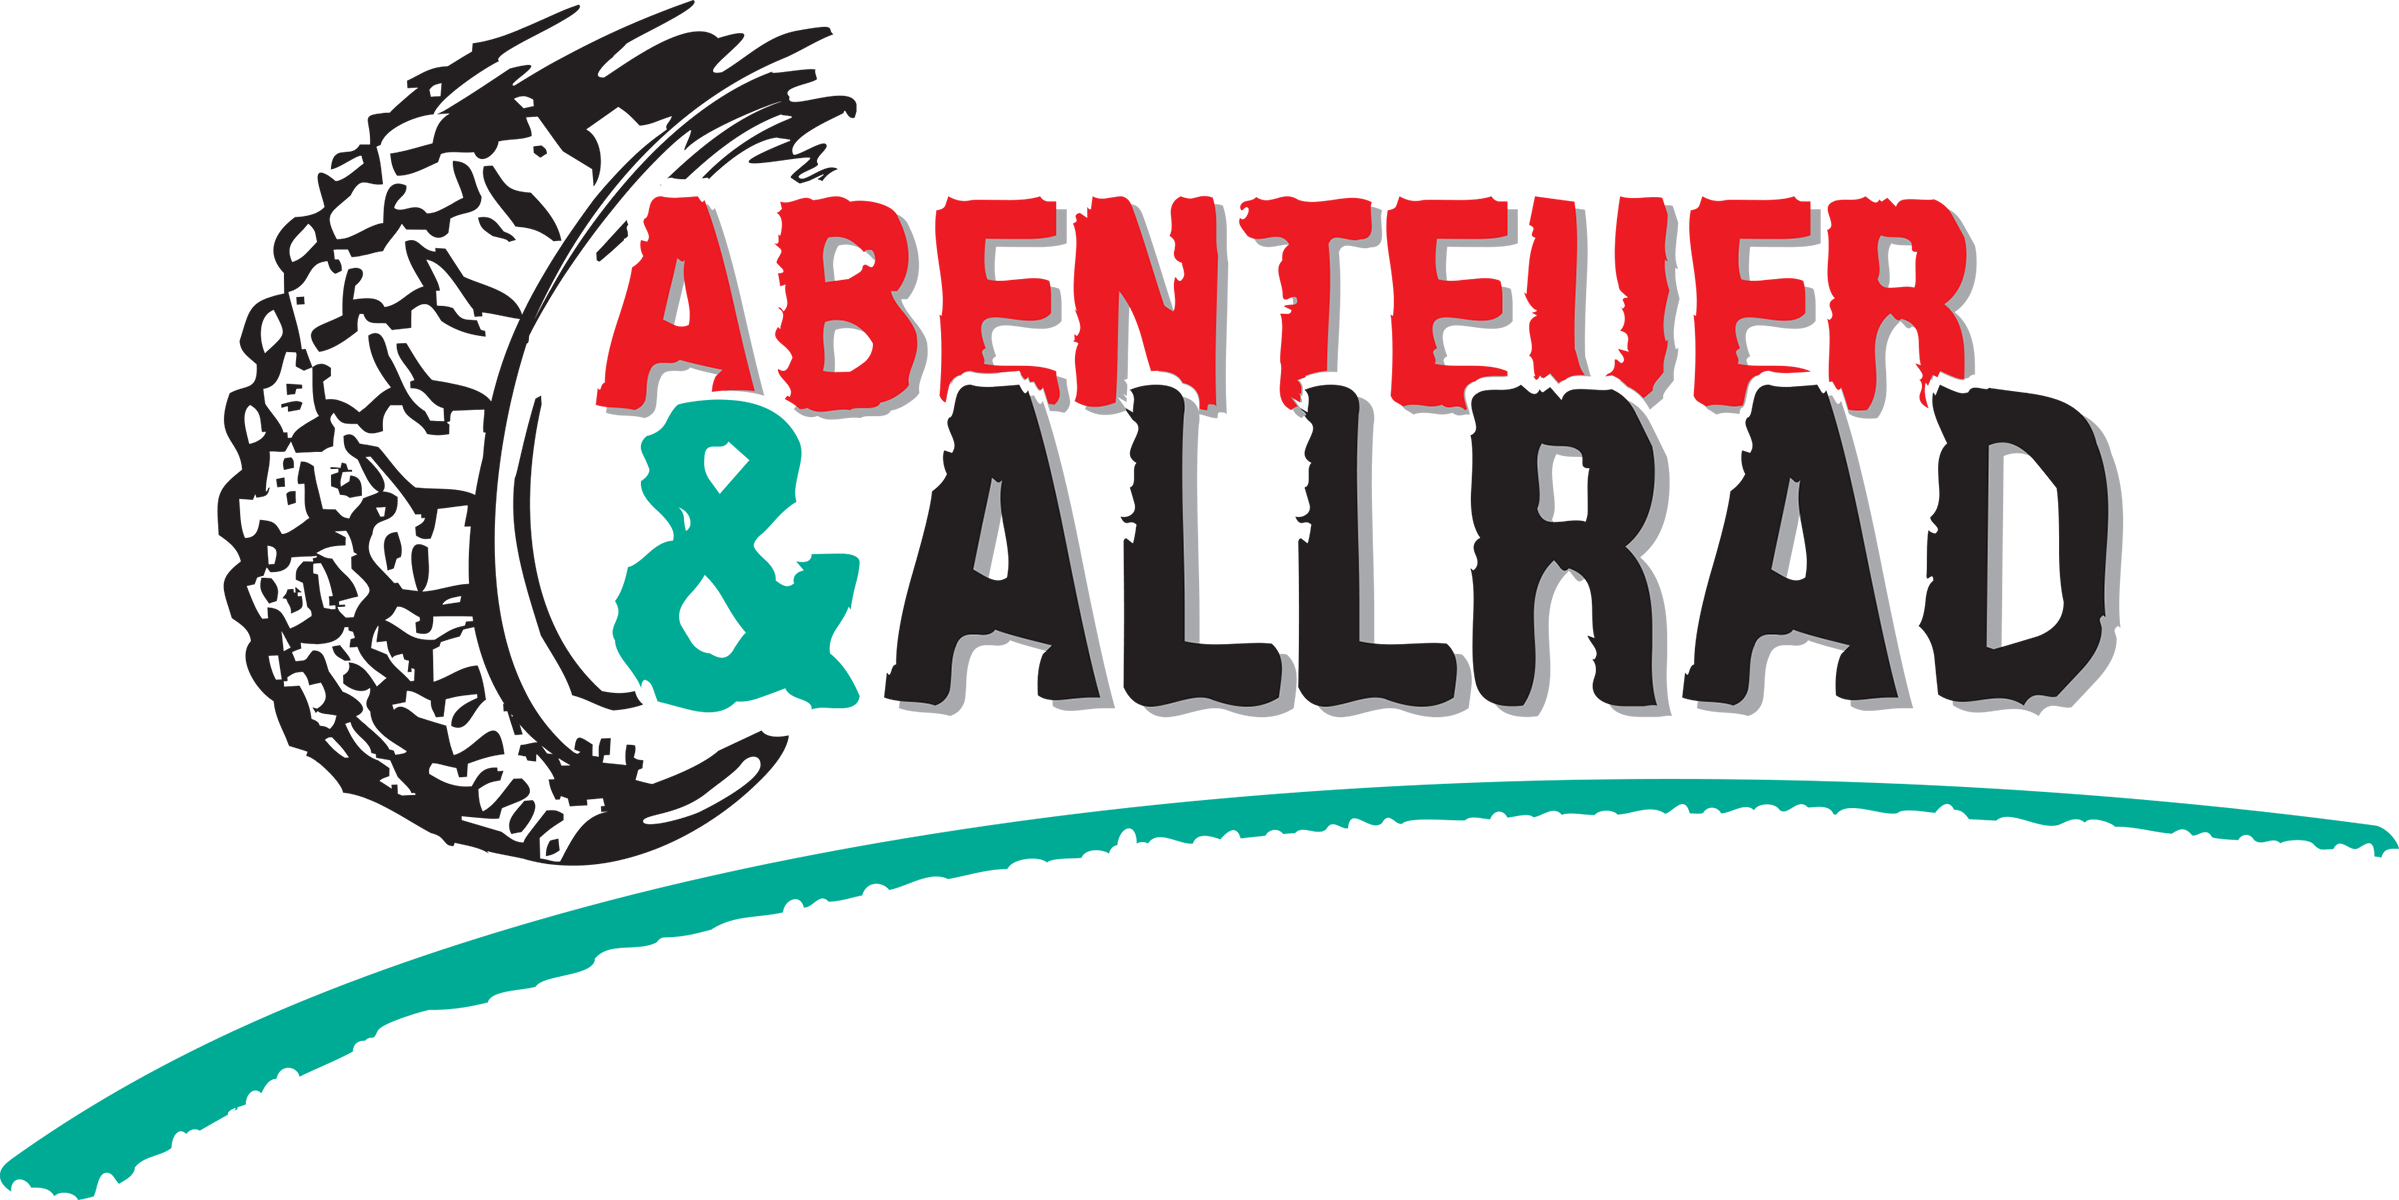 Abenteuer & Allrad Logo